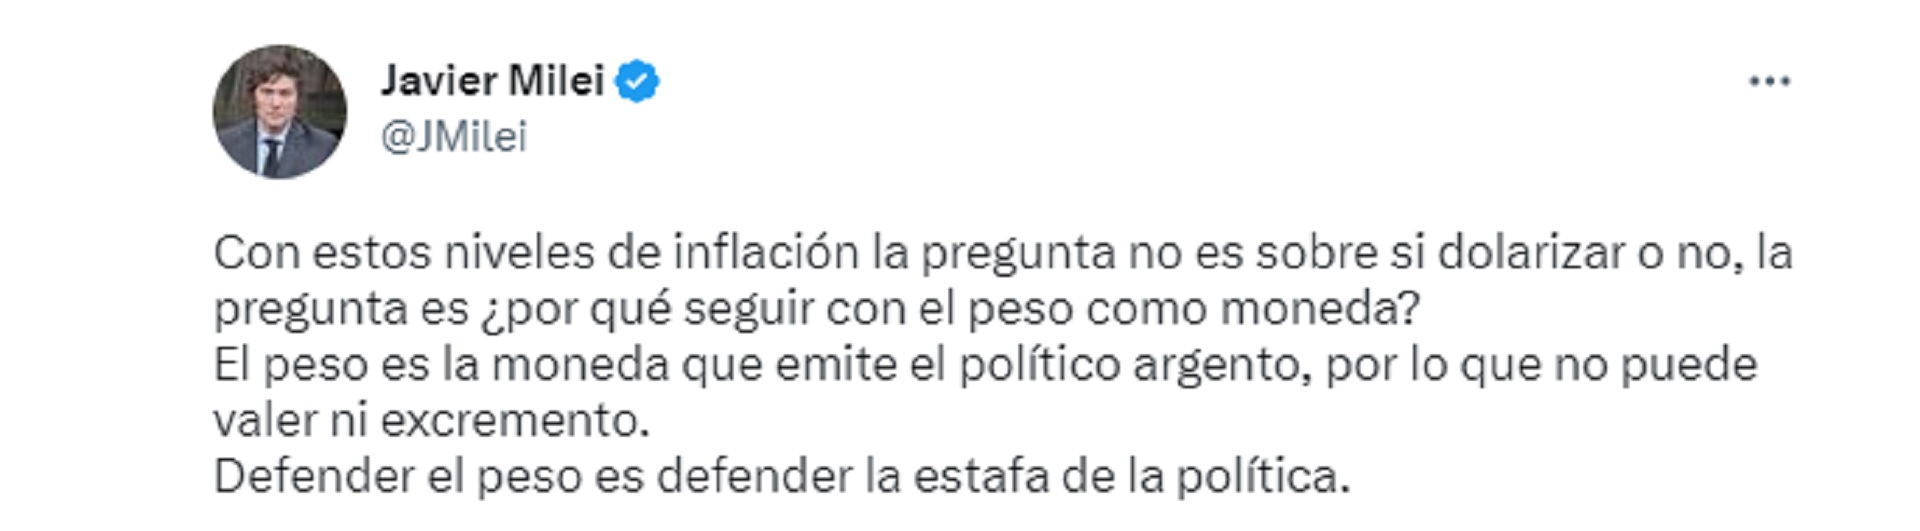 Javier Milei - Inflación